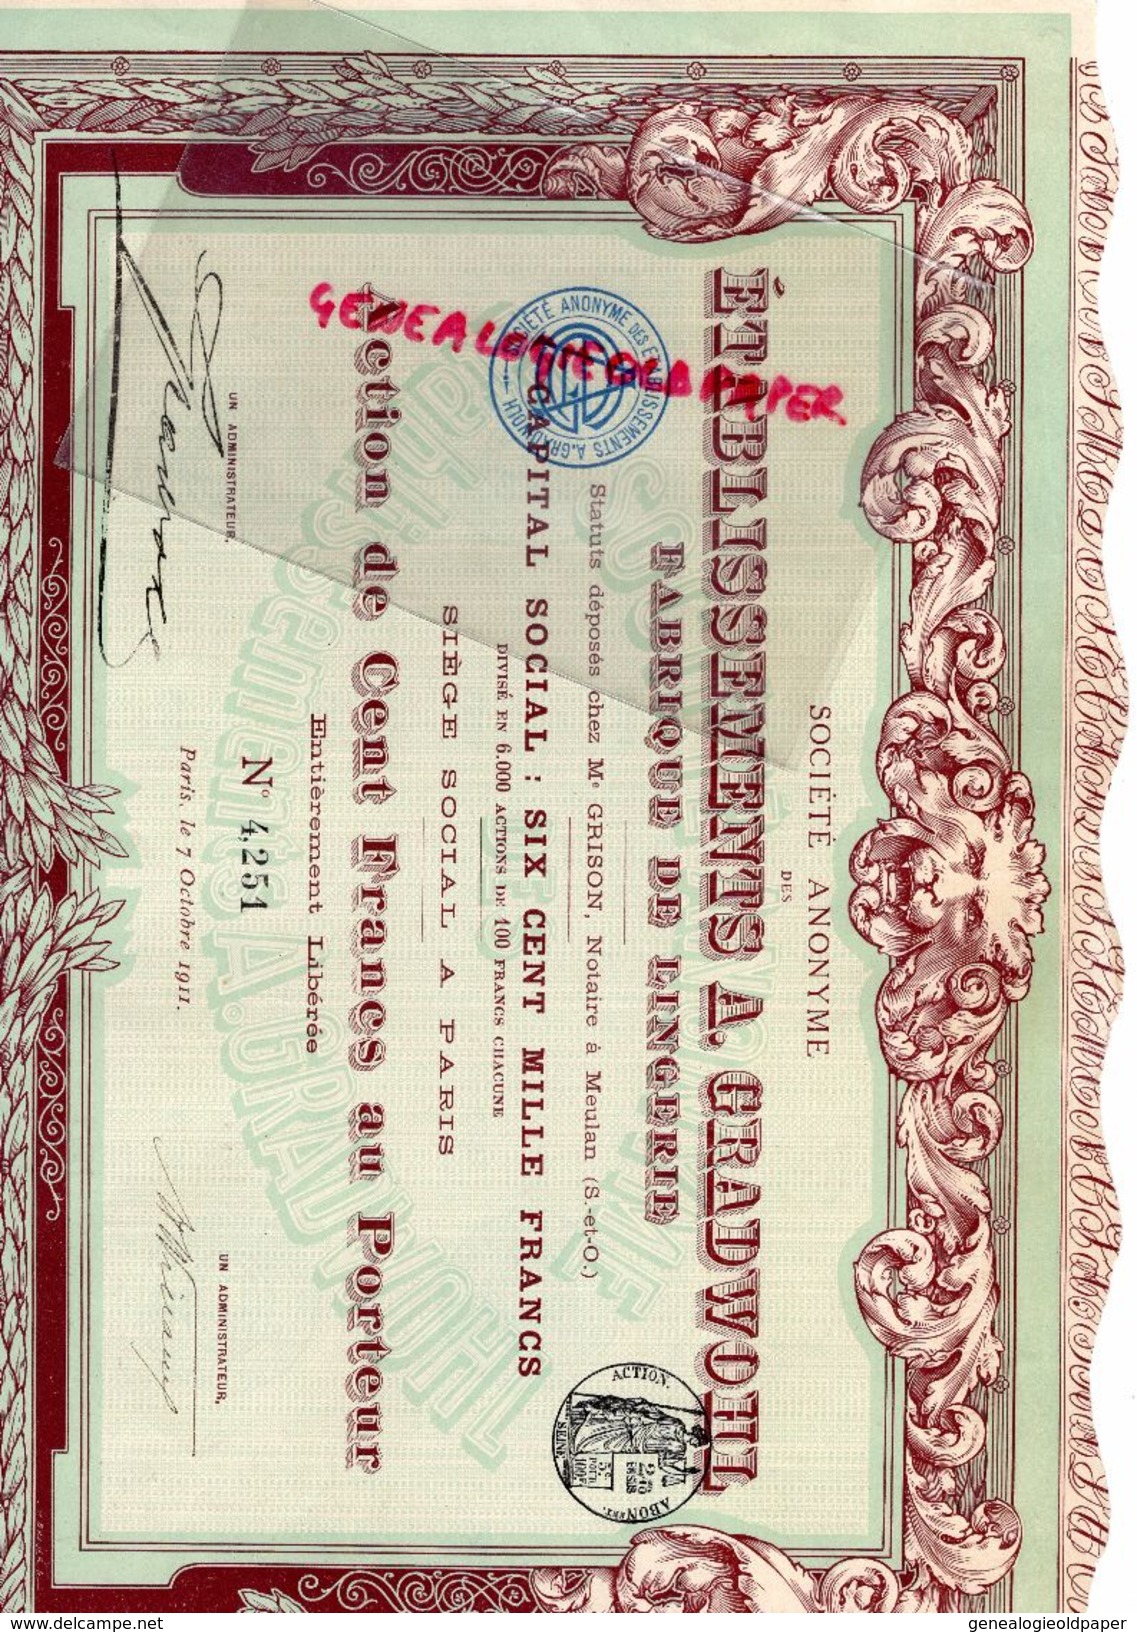 75- PARIS- ACTION CENT FRANCS ETABLISSEMENTS A. GRADWOHL FABRIQUE LINGERIE-1911- IMPRIMERIE RICHARD - Textil